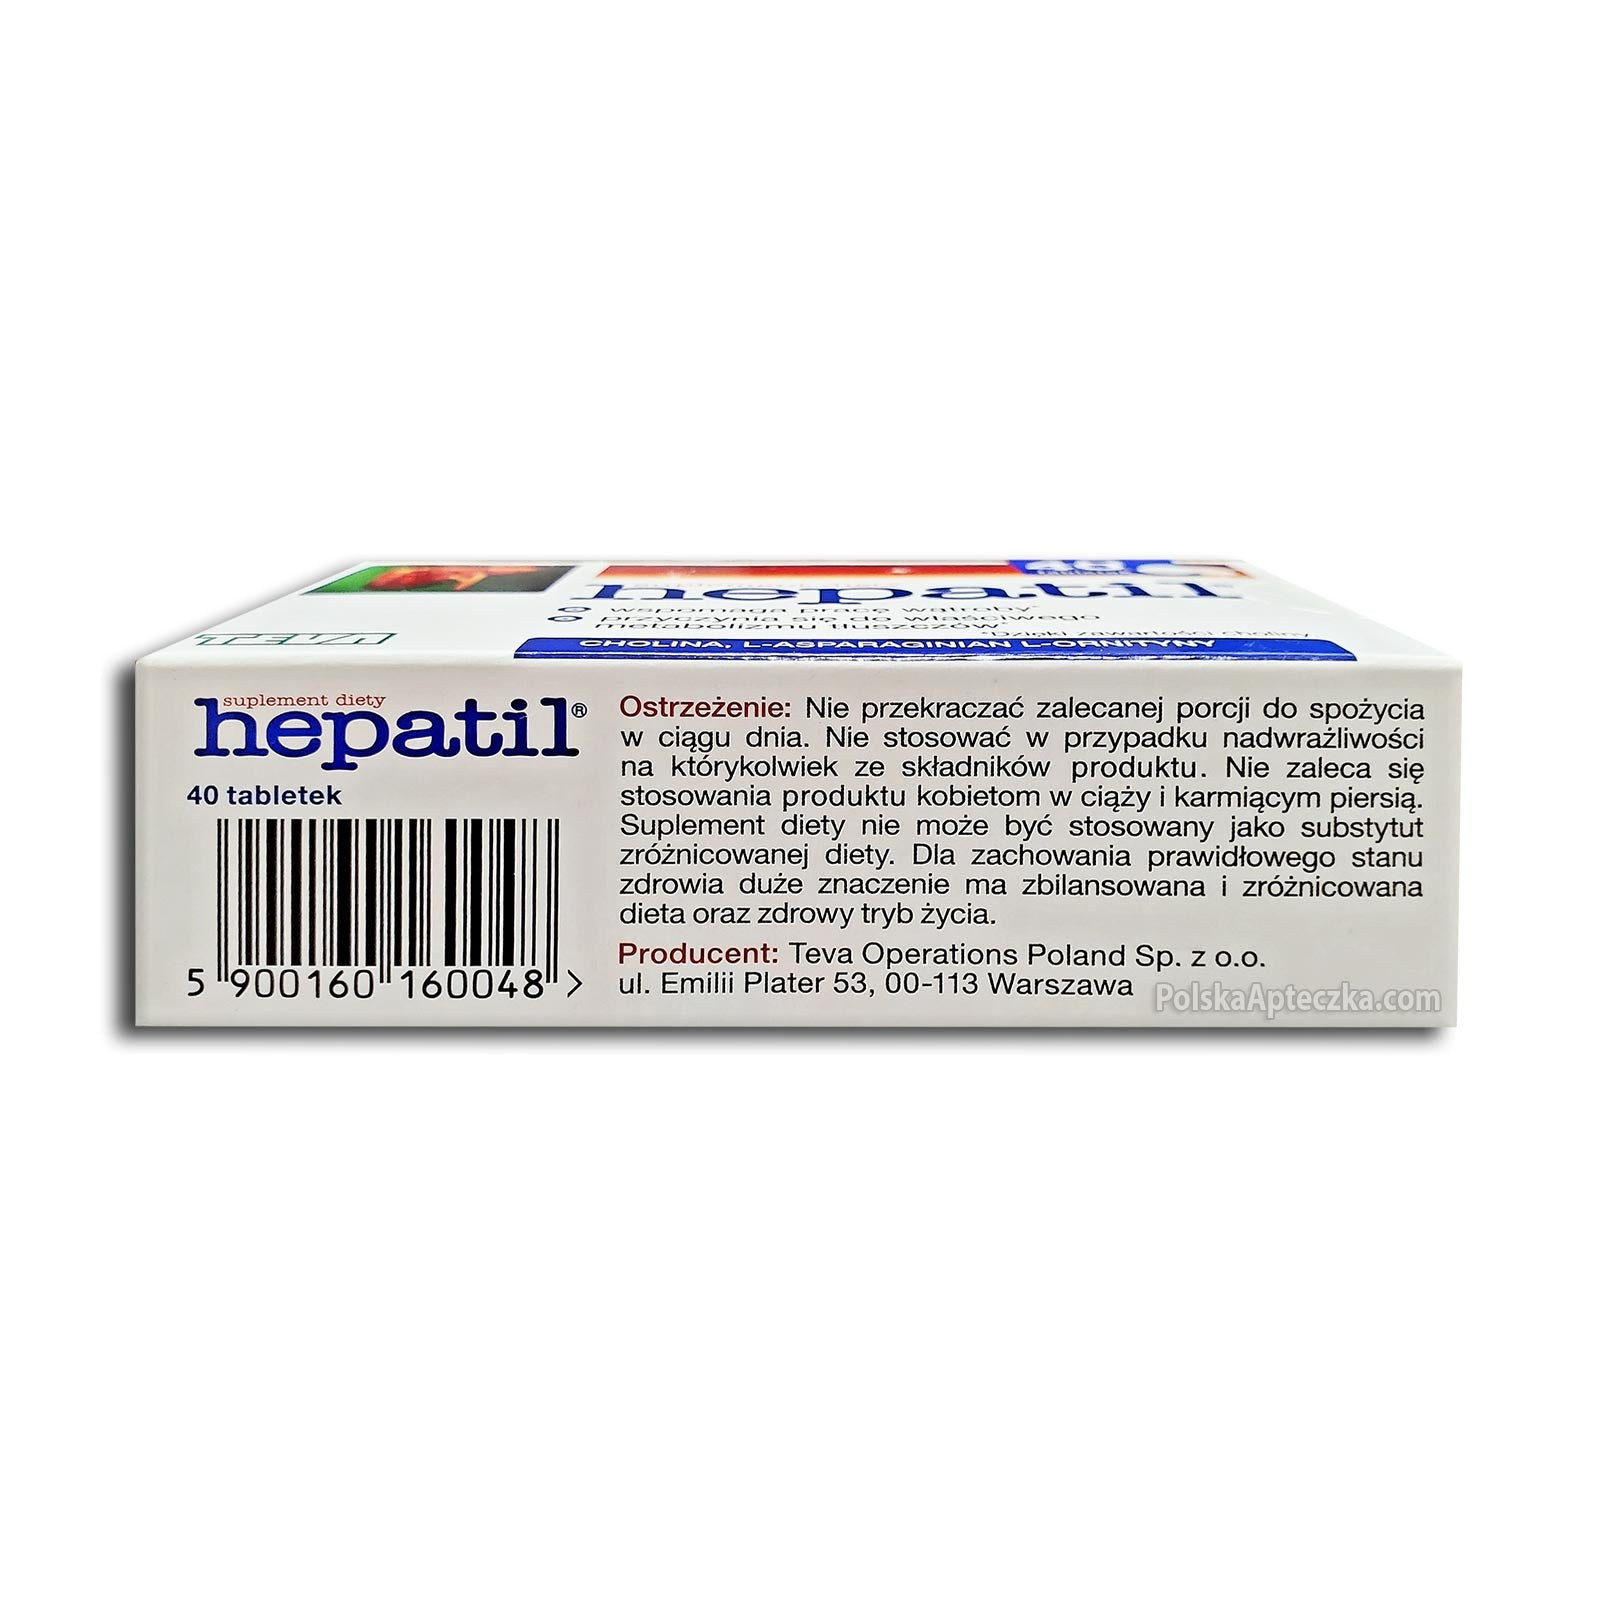 hepatil tablets